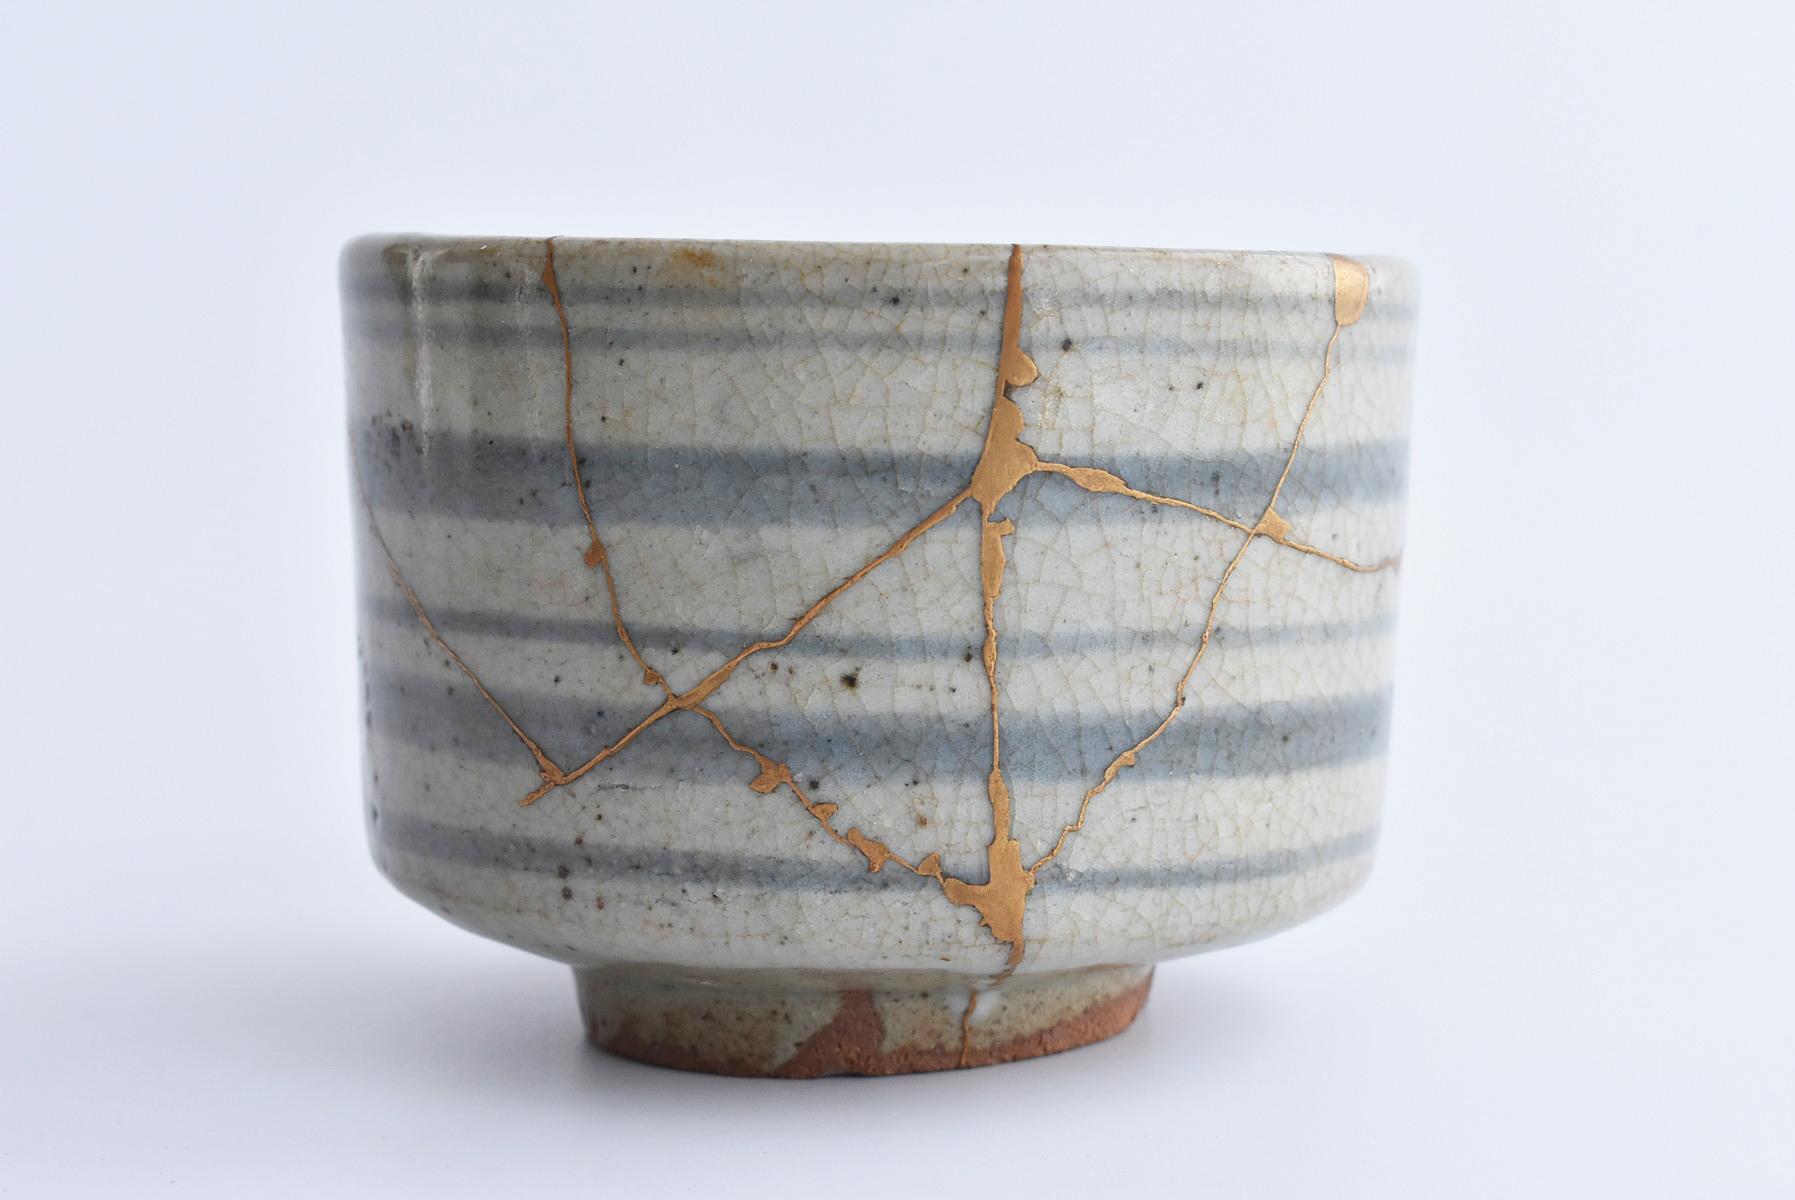 Edo Japanese Ceramic 1600s Early Karatsu Ware Kintsugi Bowl / Ring Pattern Chawan